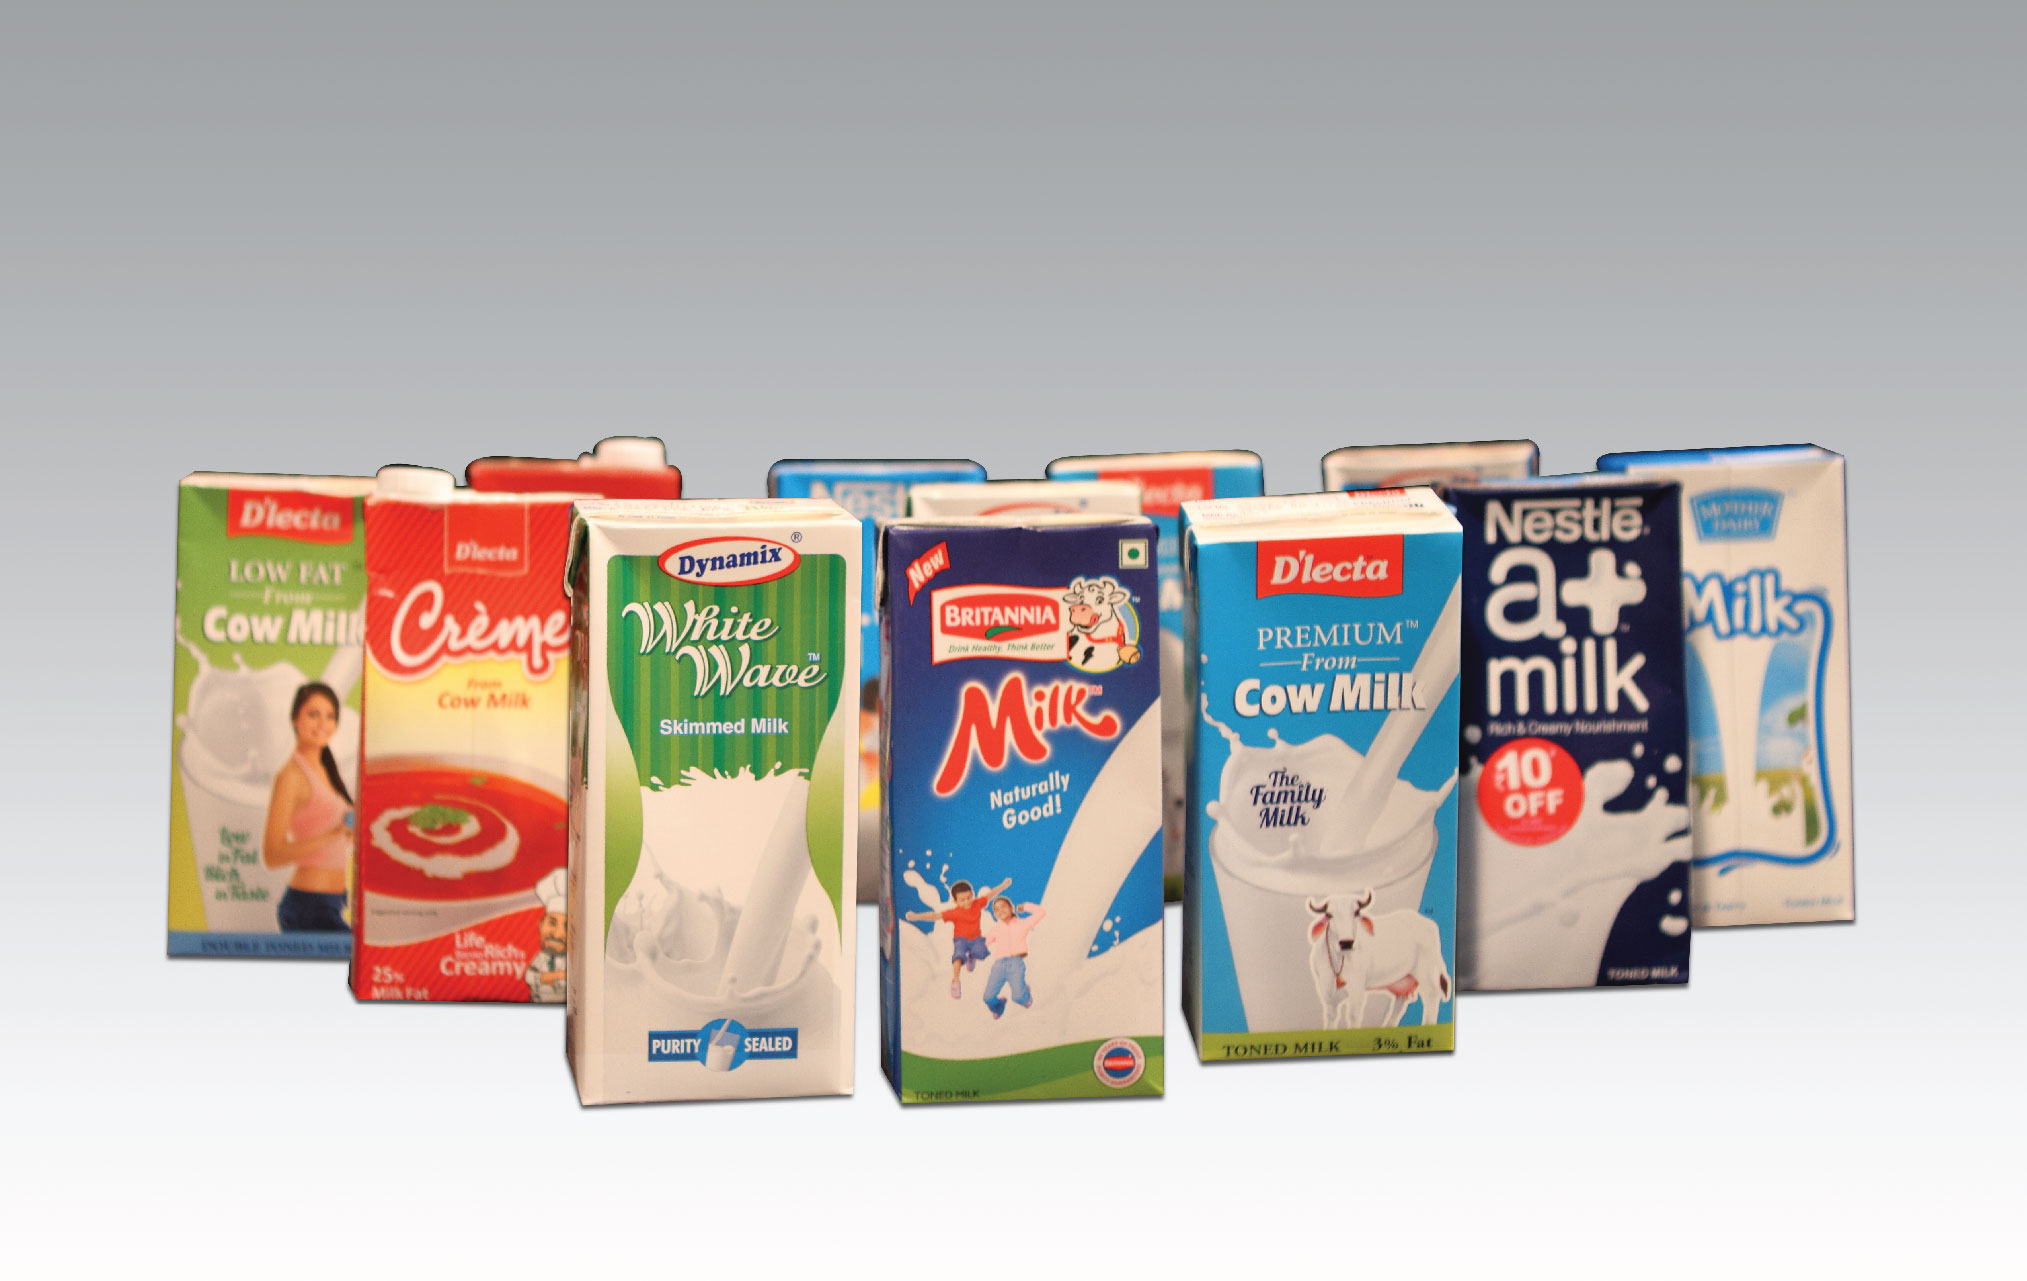 Schreiber Dynamix - UHT milk products